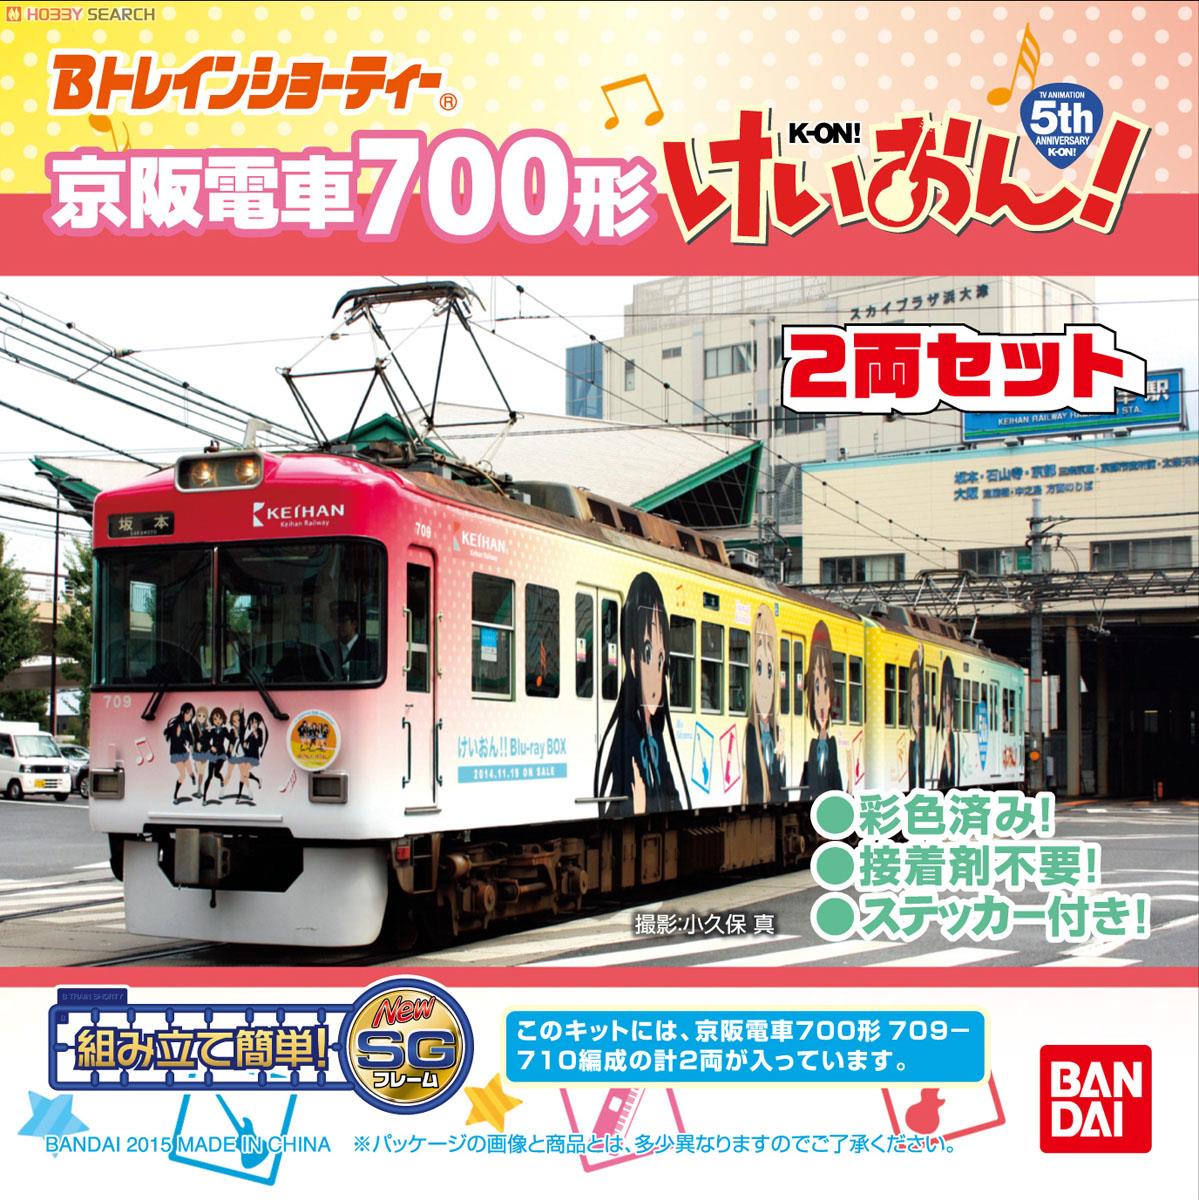 Bトレインショーティー 京阪電車 700形 けいおん! 5th Anniversary ラッピング電車 (2両セット) (鉄道模型) パッケージ1